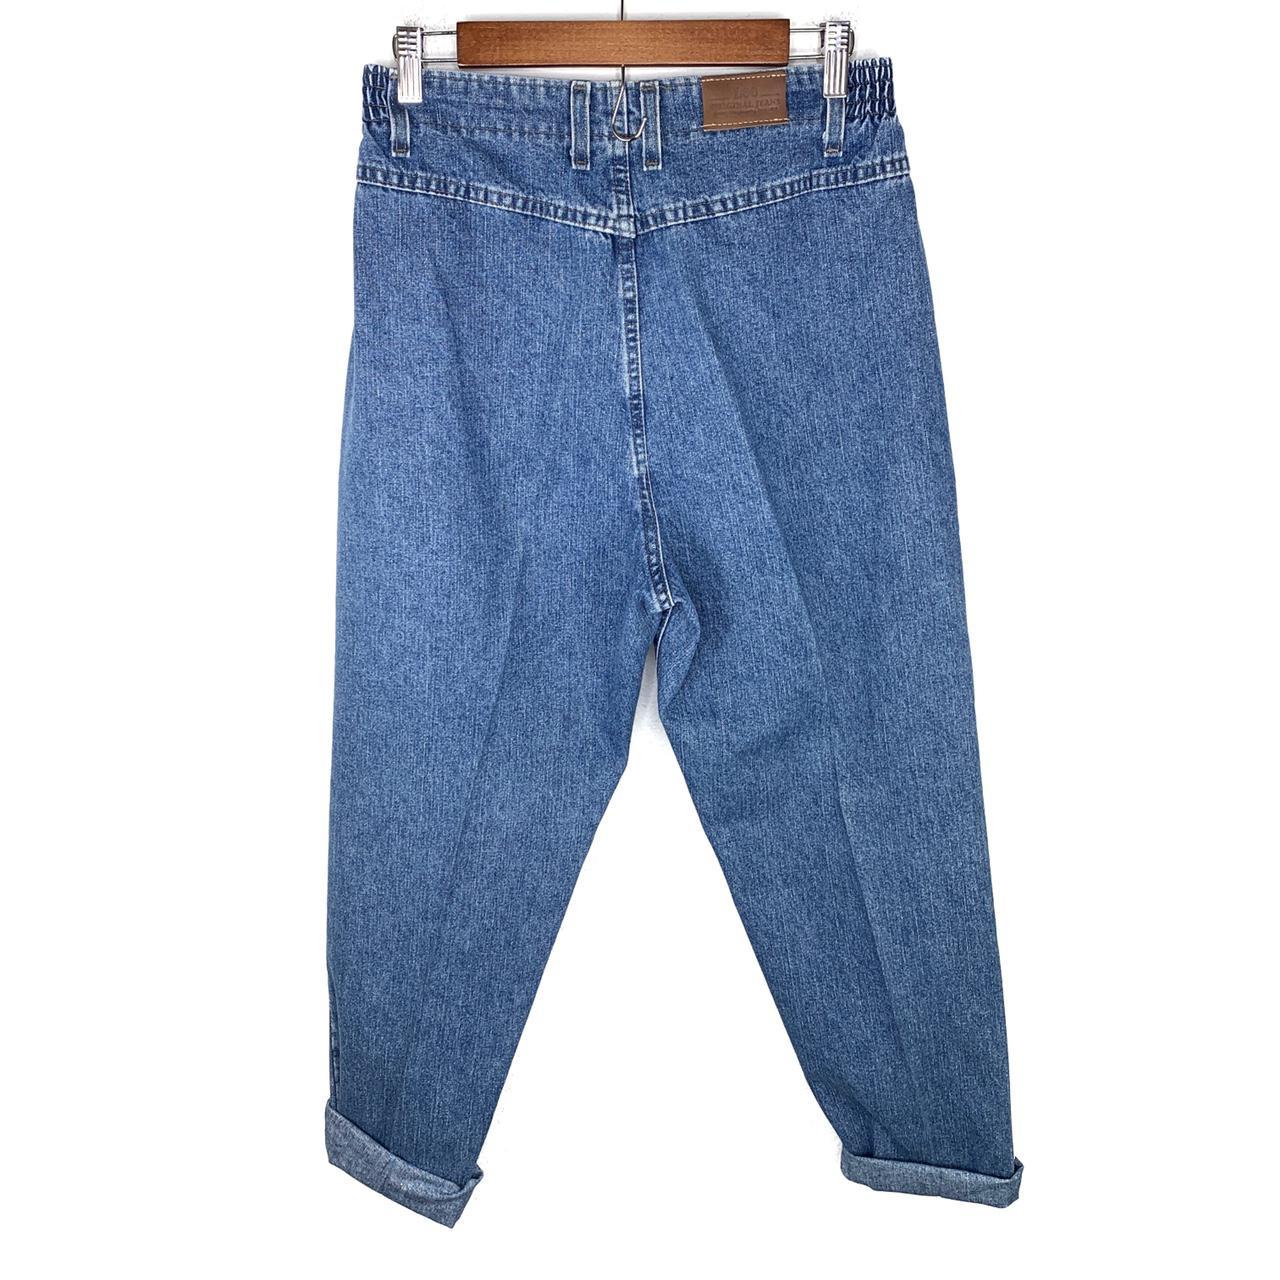 Vintage denim high waisted Lee mom jeans with no... - Depop